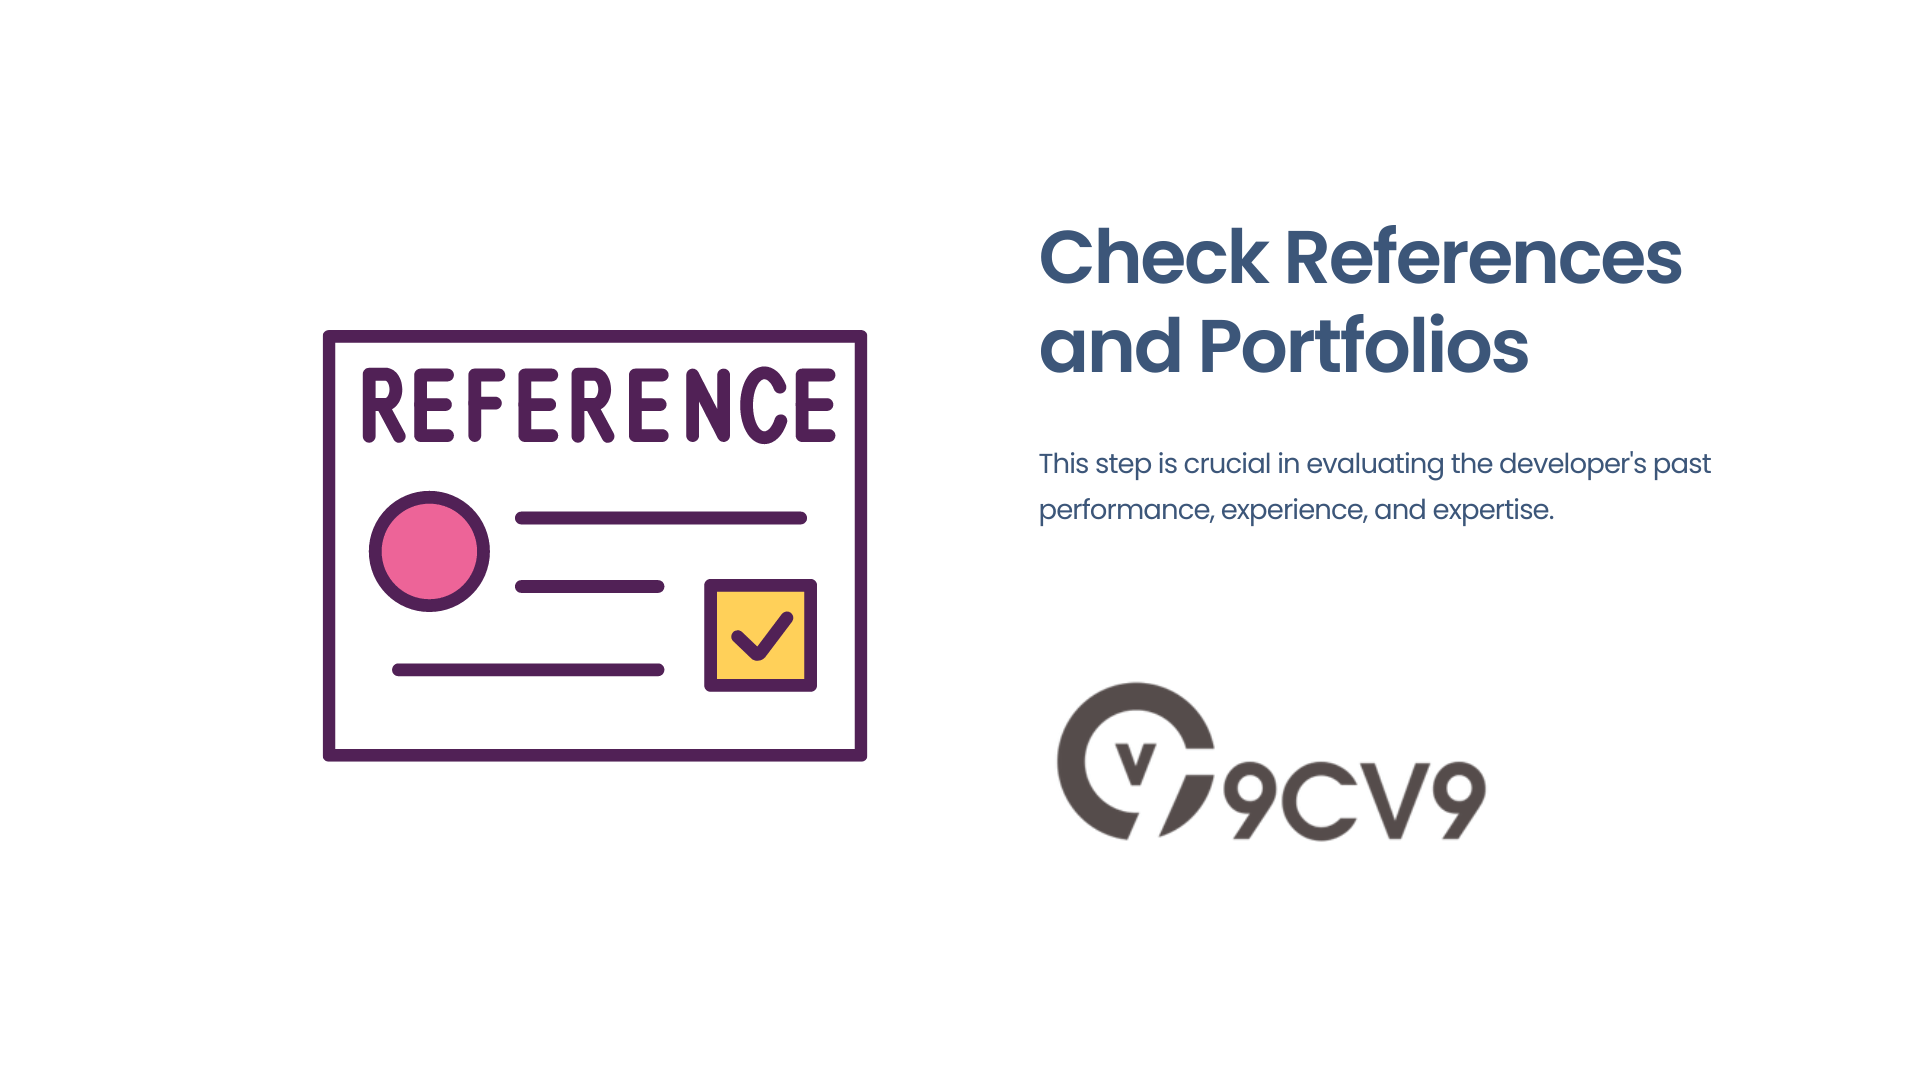 Check References and Portfolios